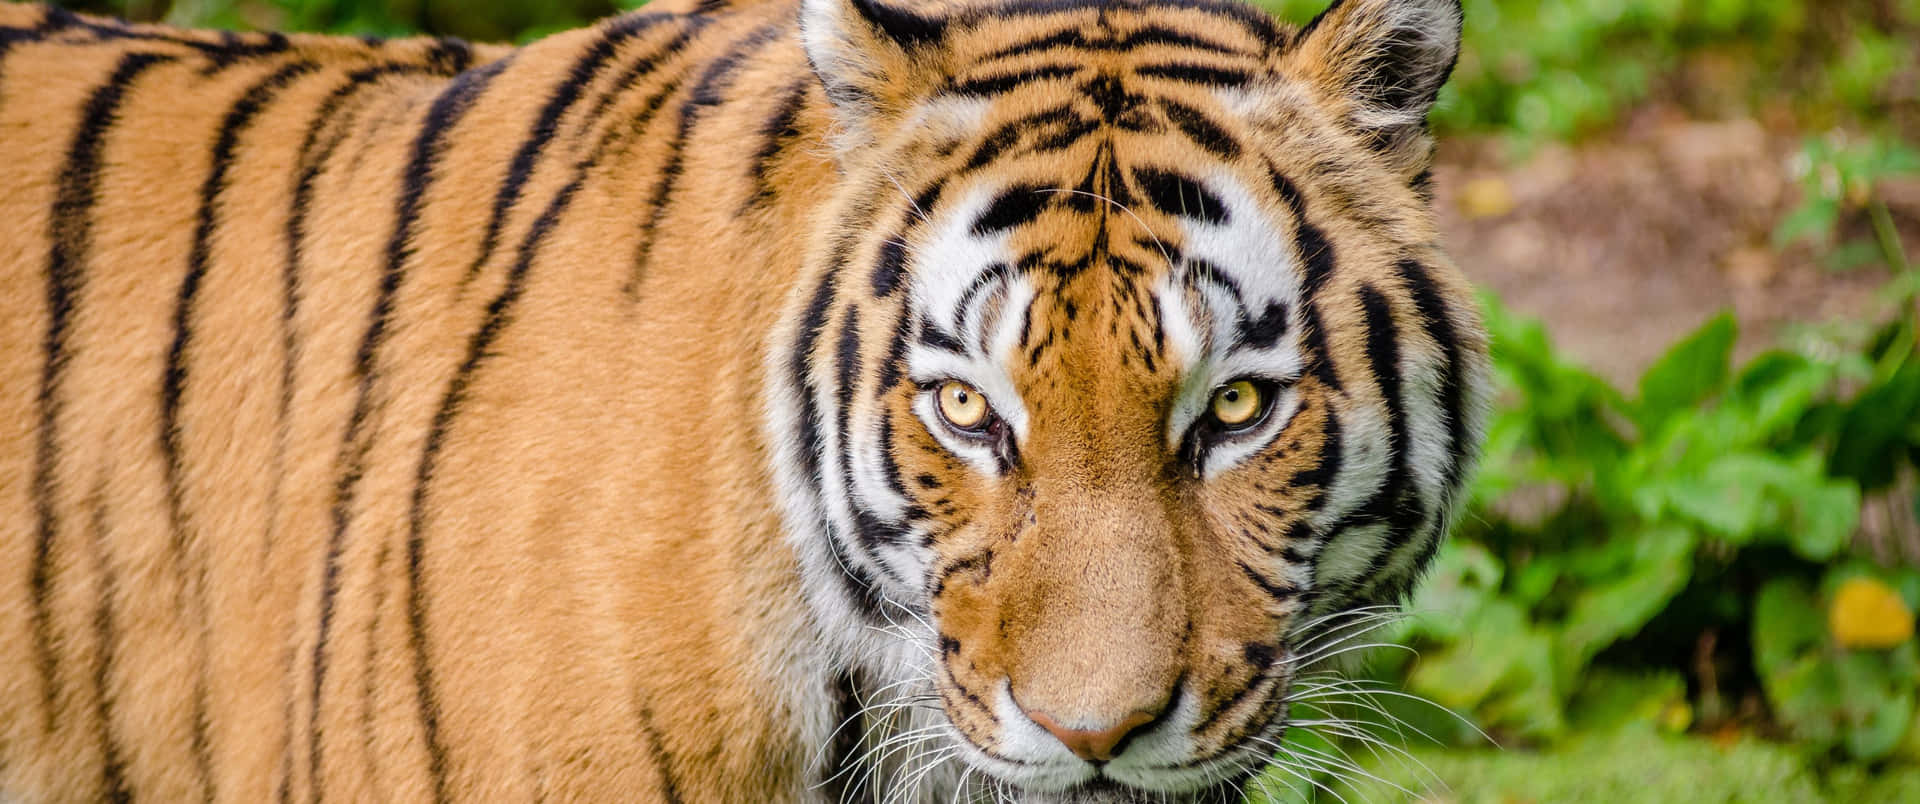 3440x1440 Animal Striped Bengal Tiger Wallpaper